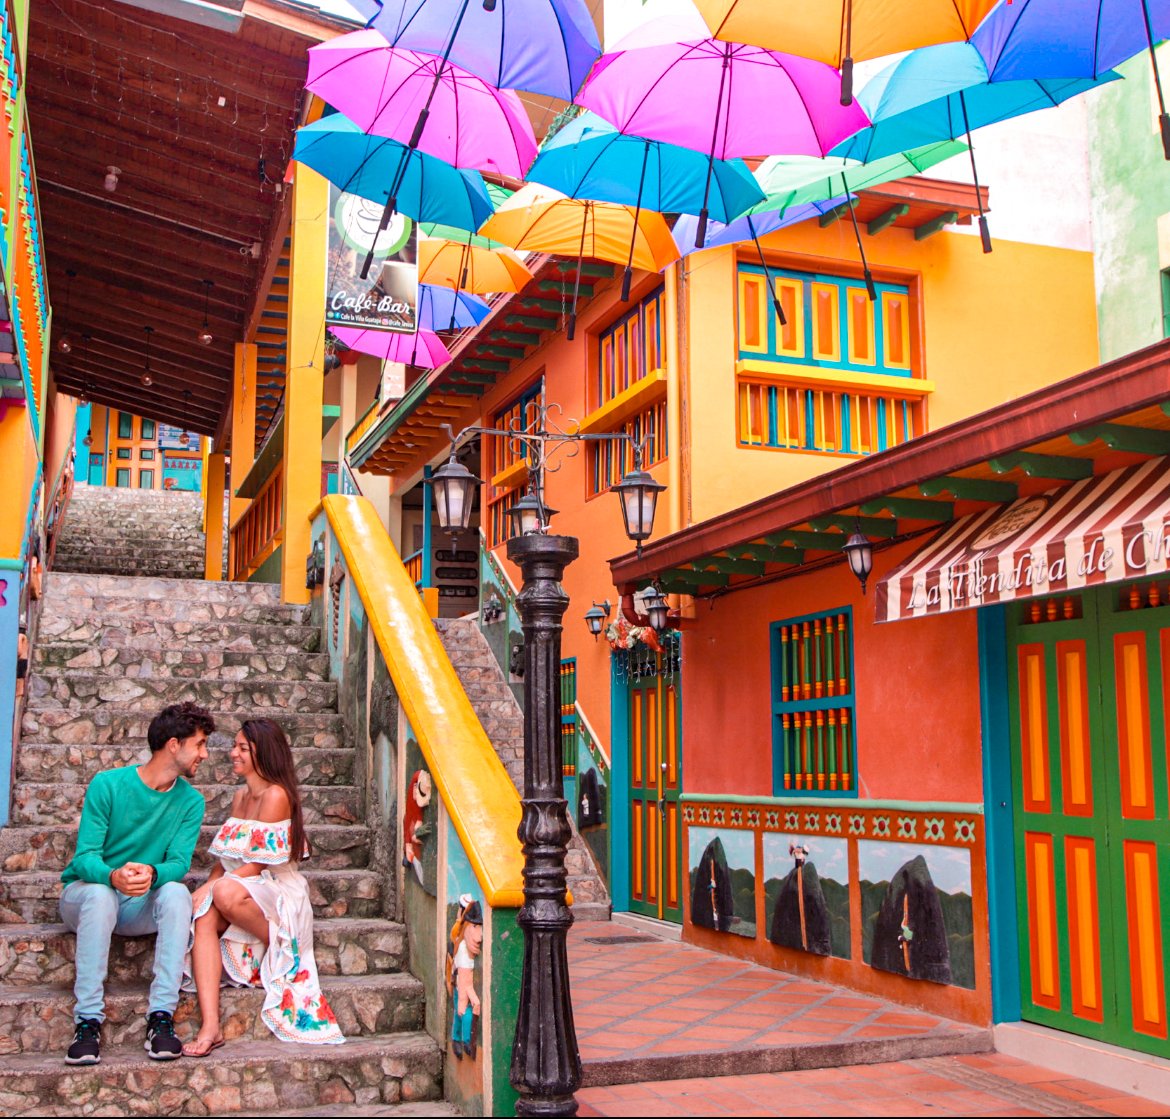 La Plazoleta in Guatape, colorful spots in Colombia